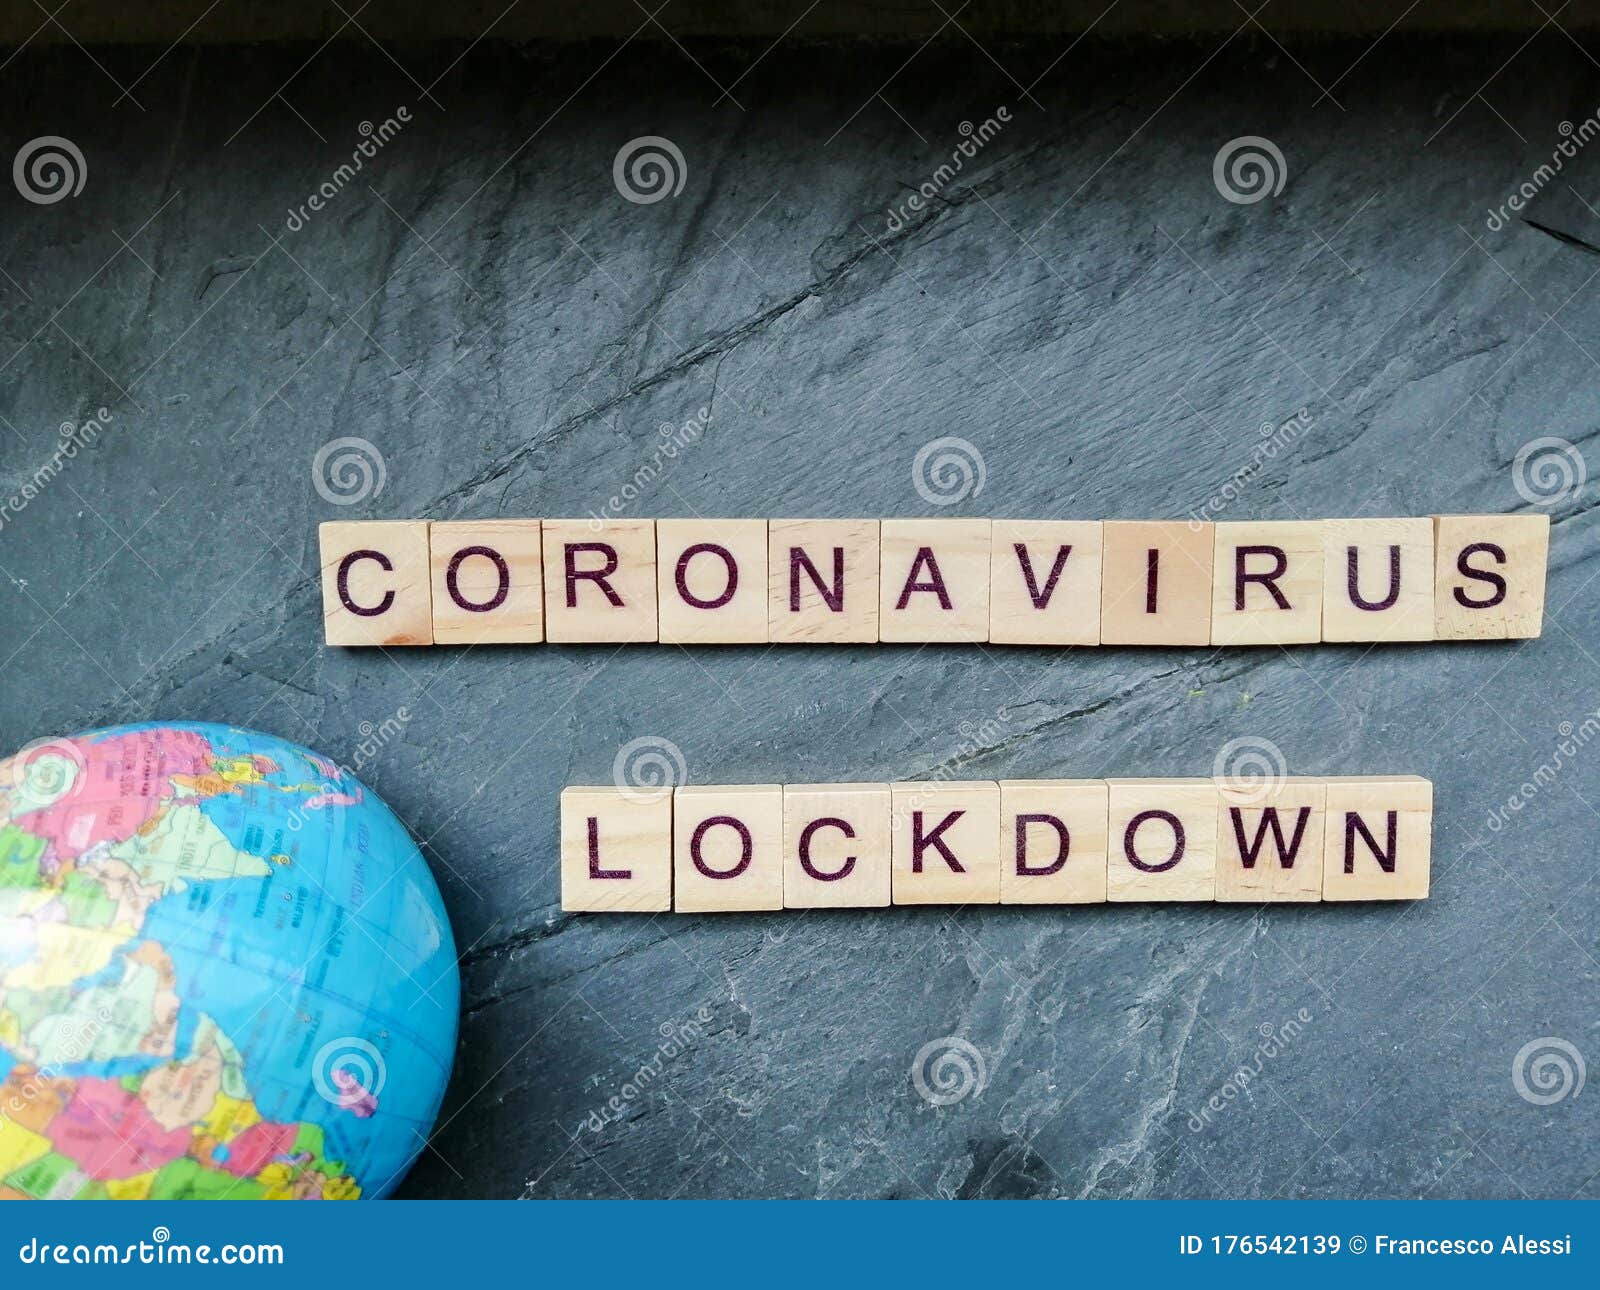 coronavirus lock down